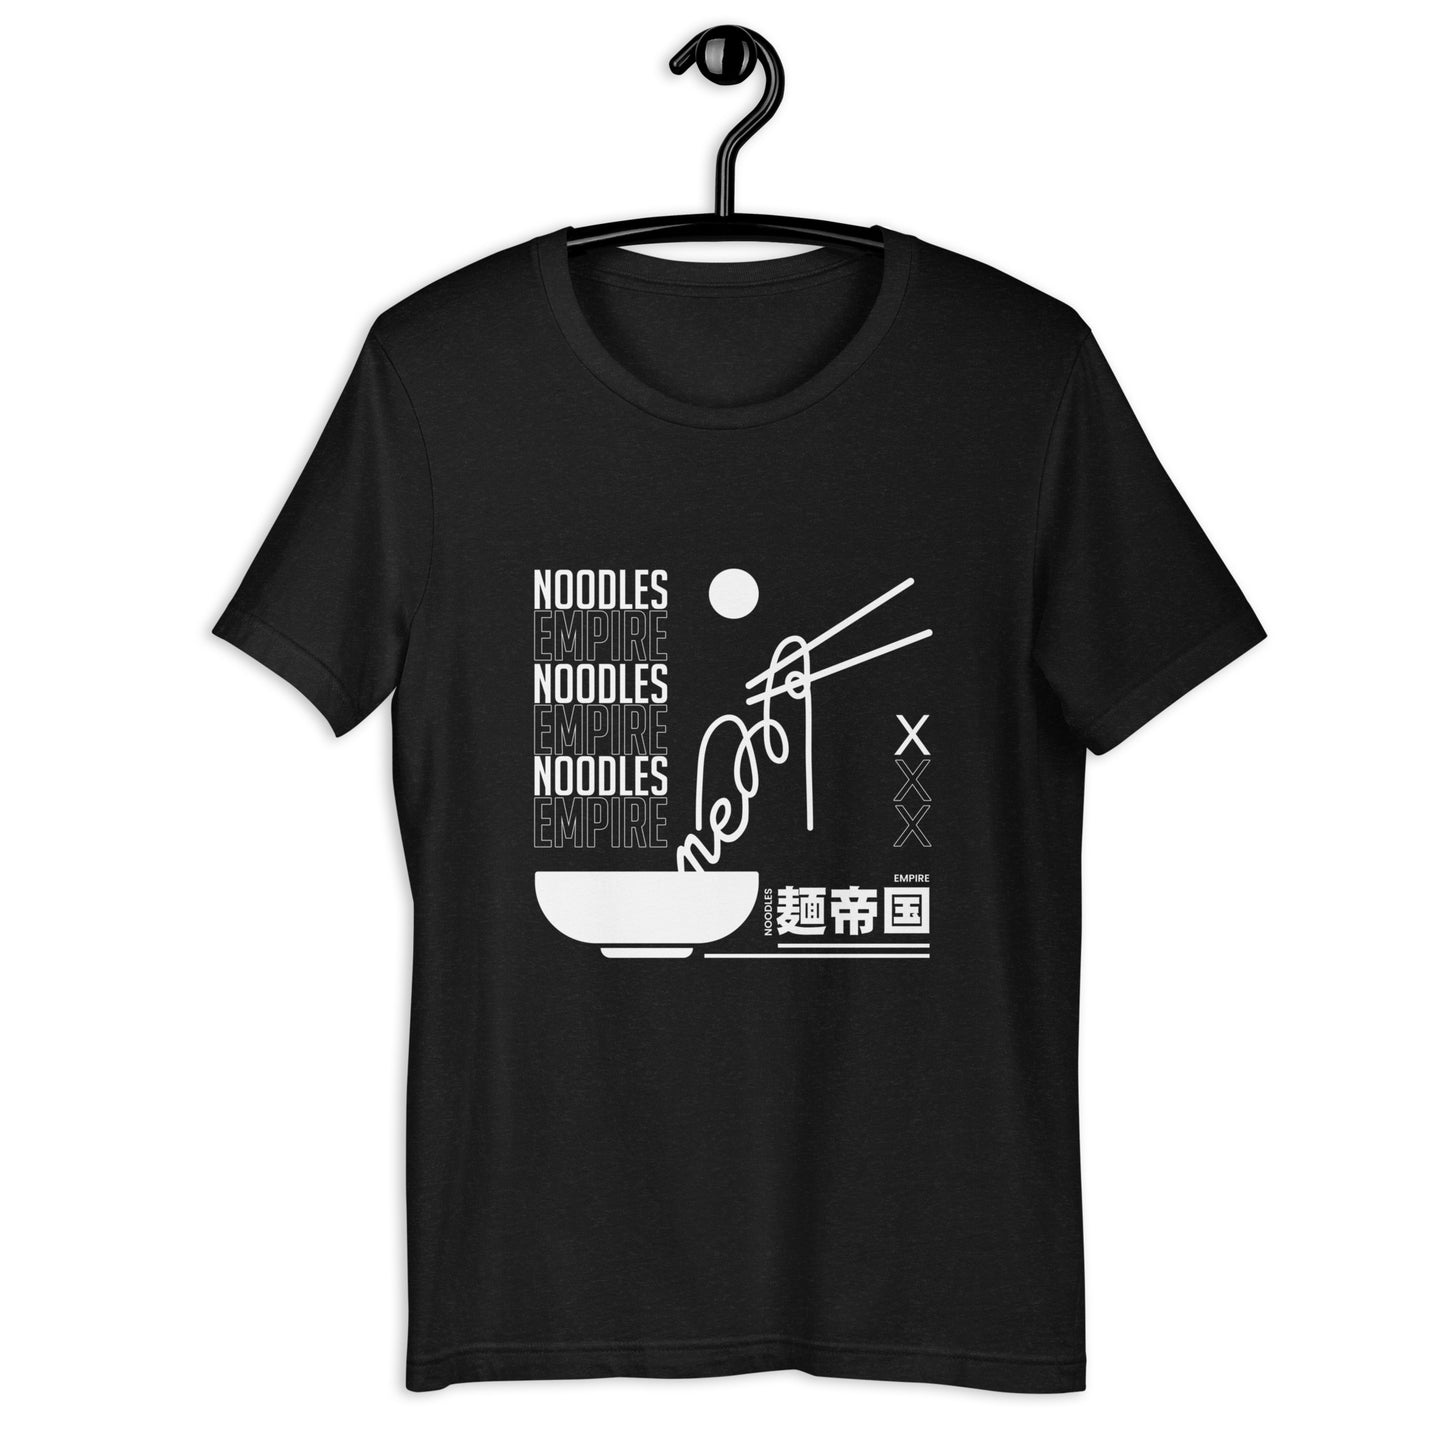 Noodle Empire T-Shirt: Urban